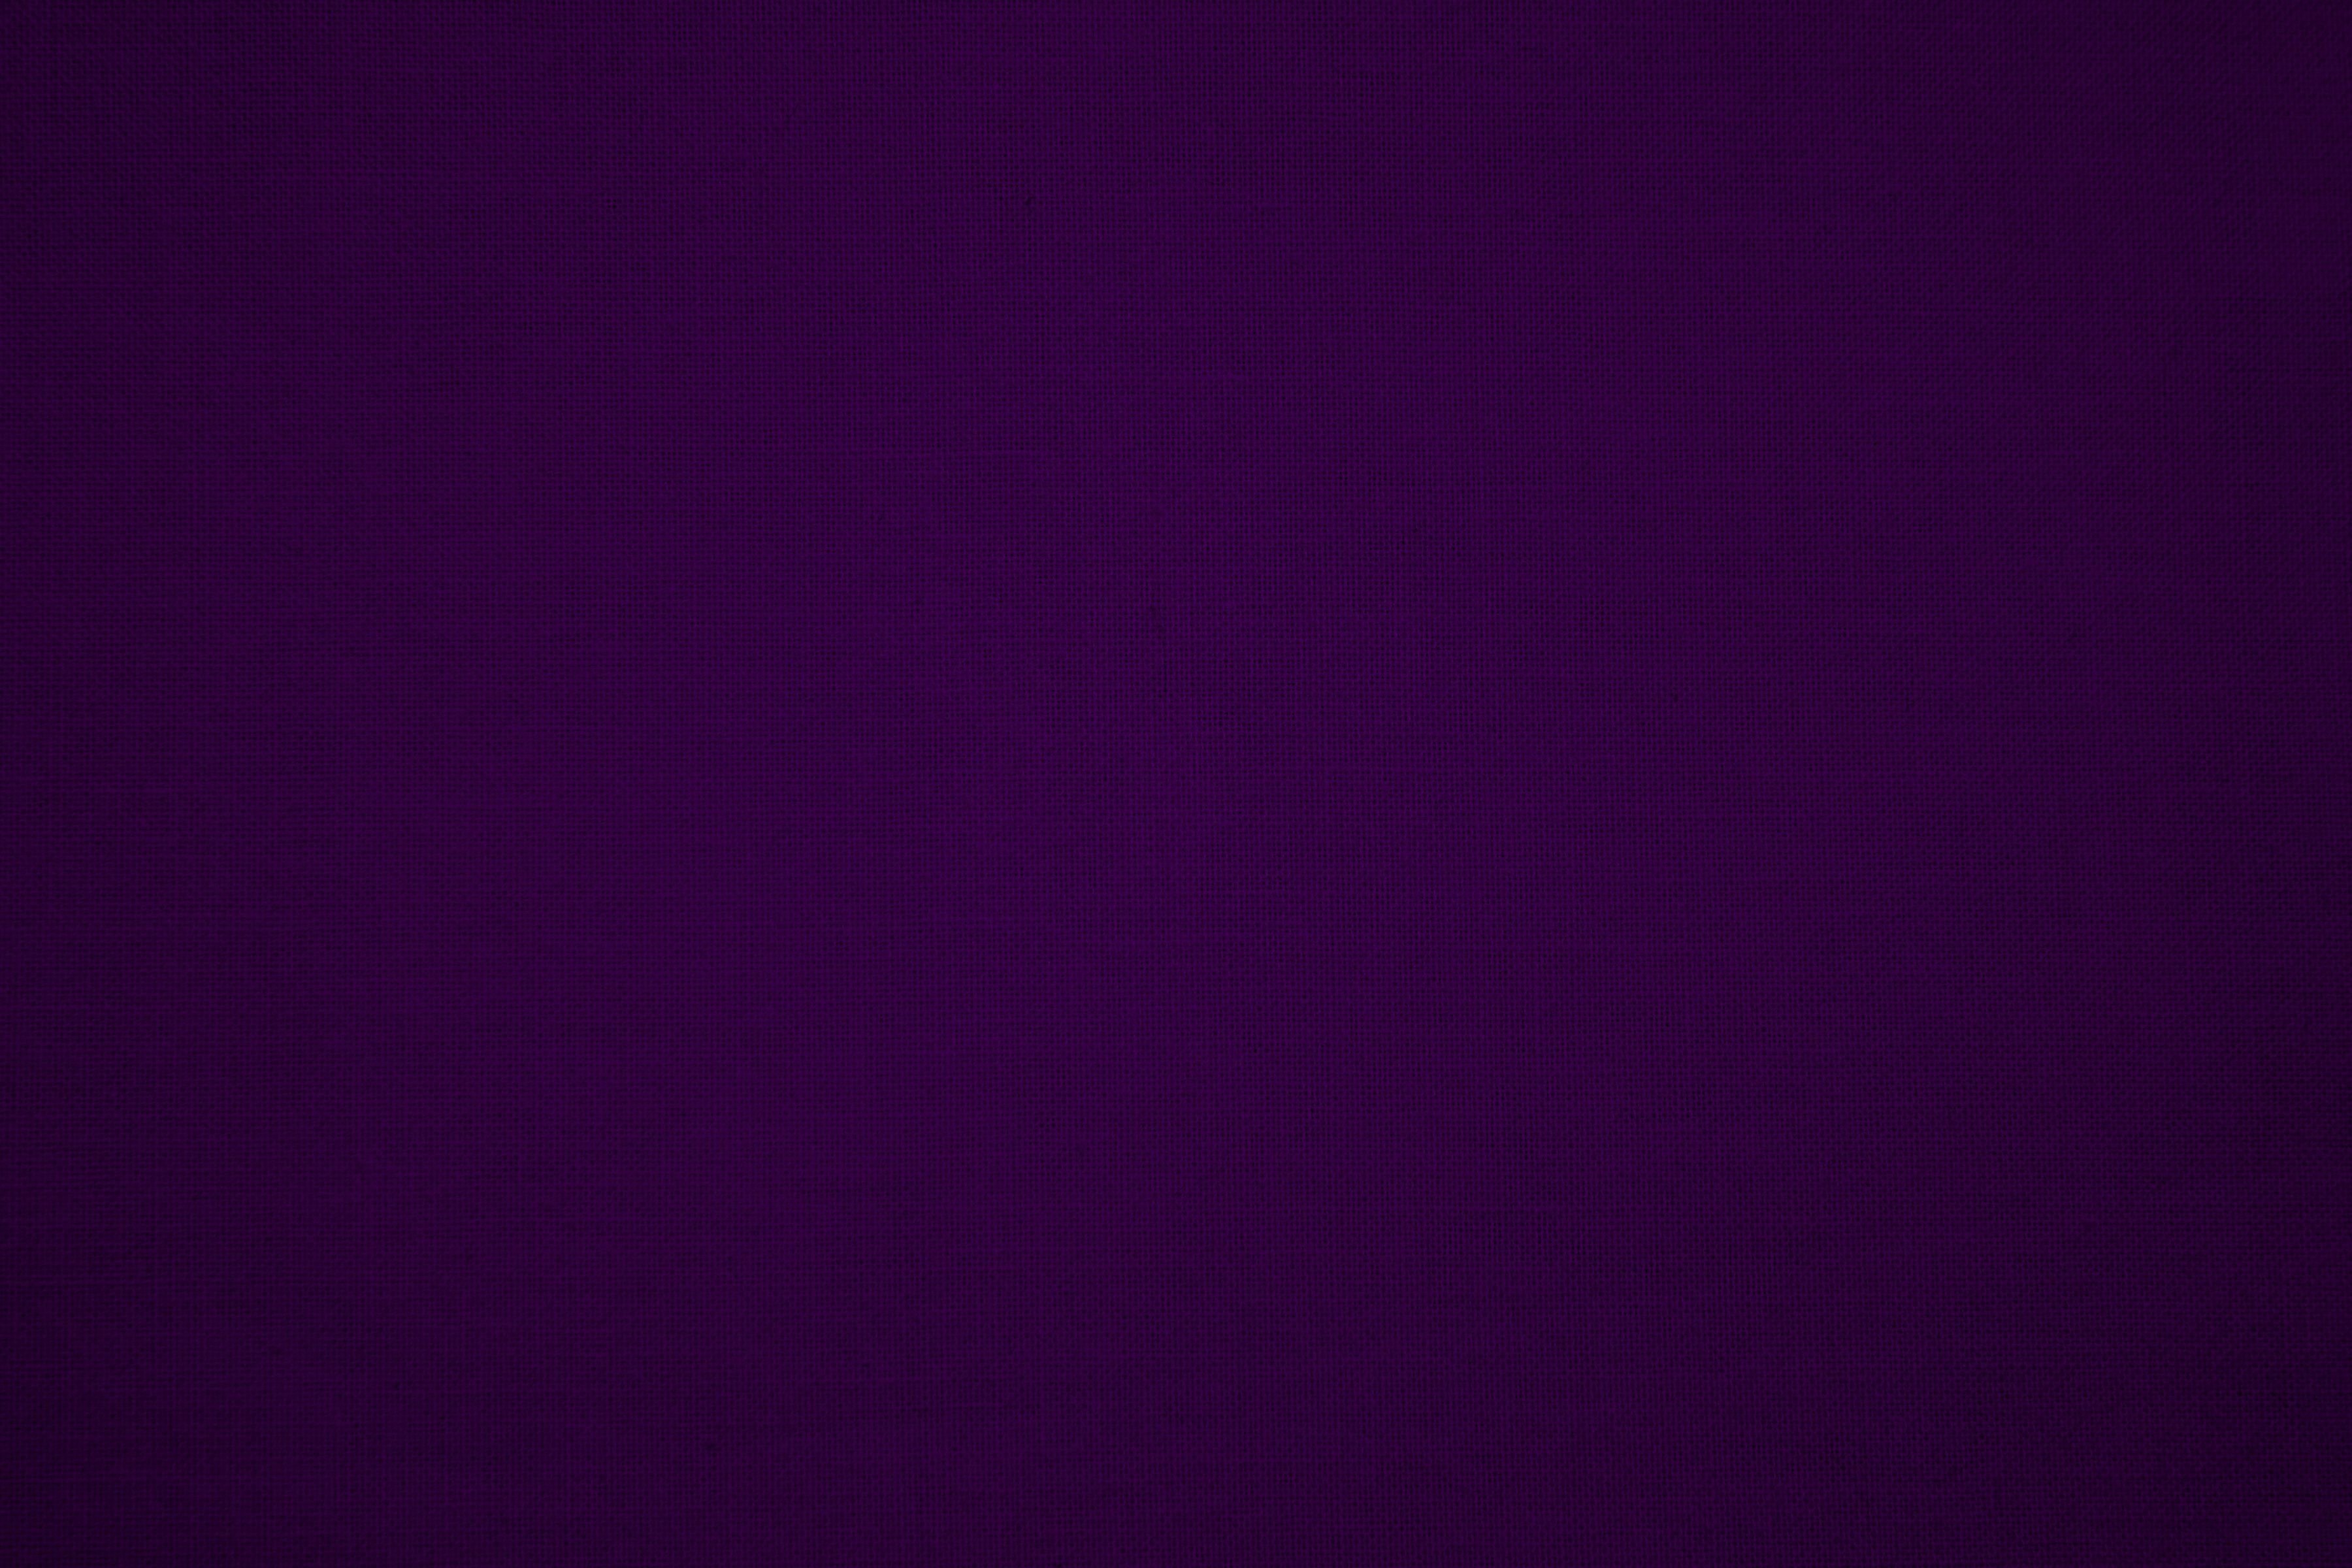 Темно фиолетовый цвет фон однотонный - фото и картинки abrakadabra.fun